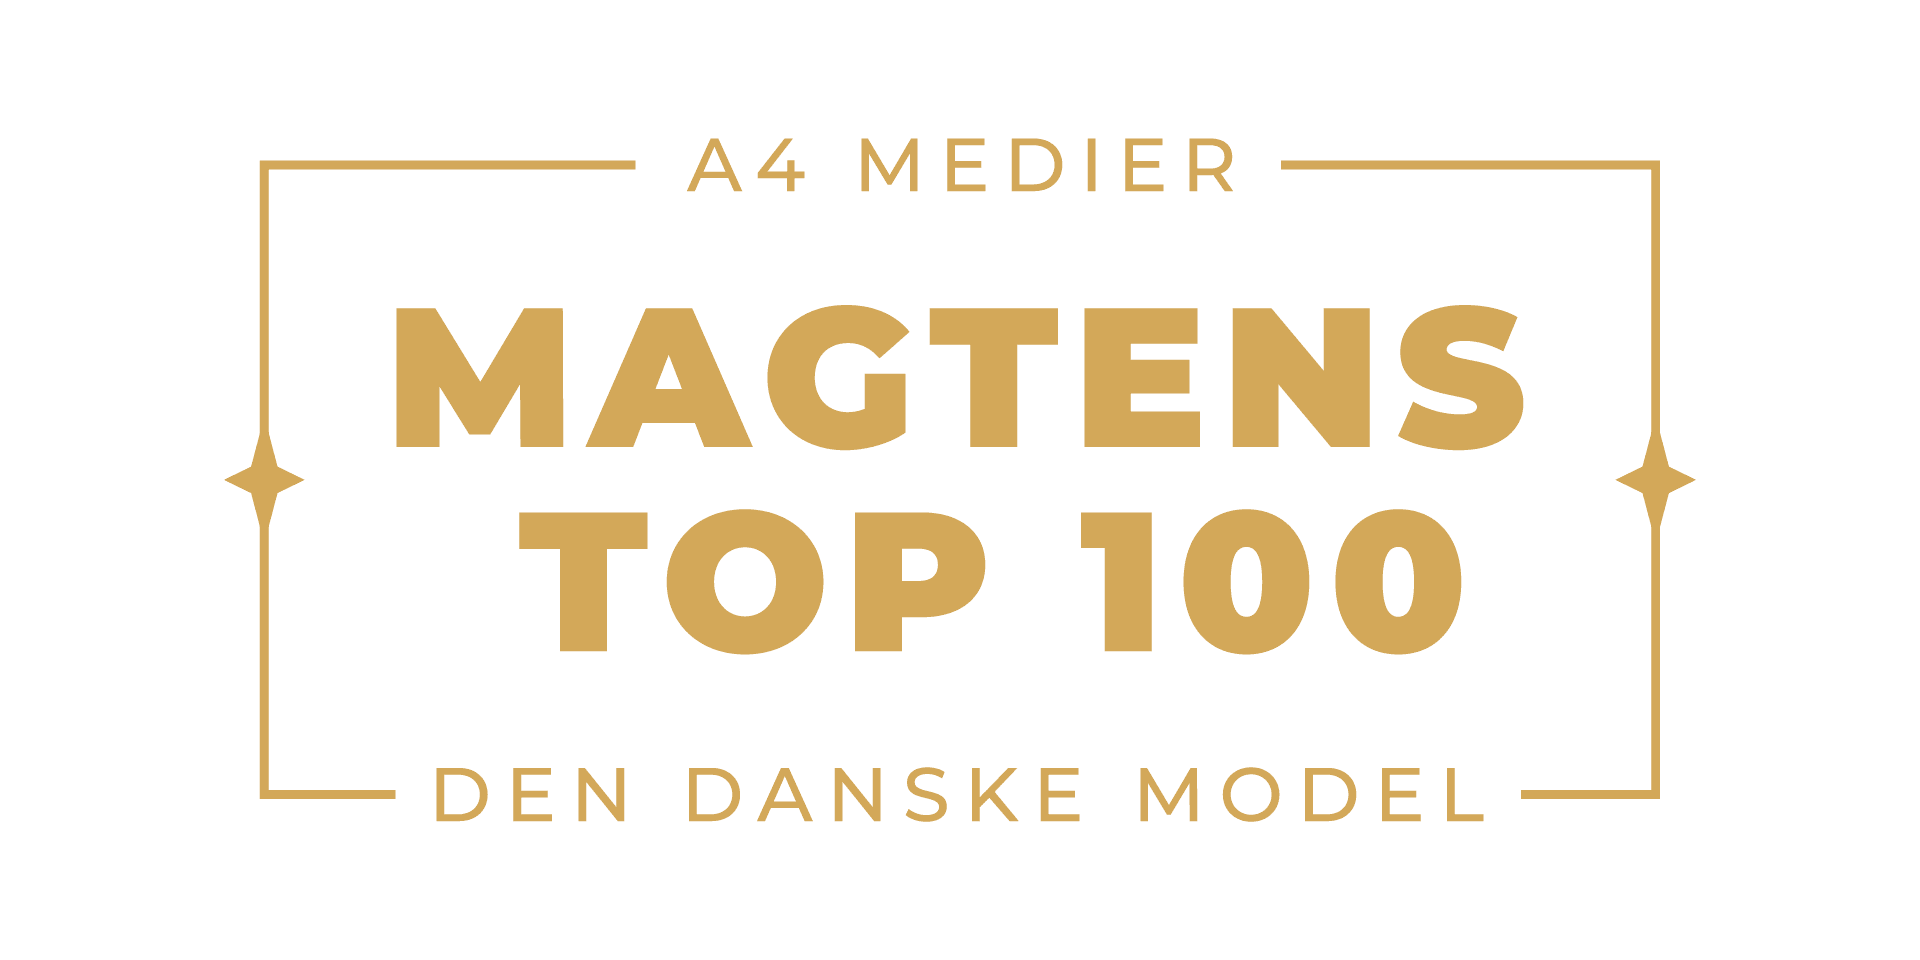 Magtens Top 100